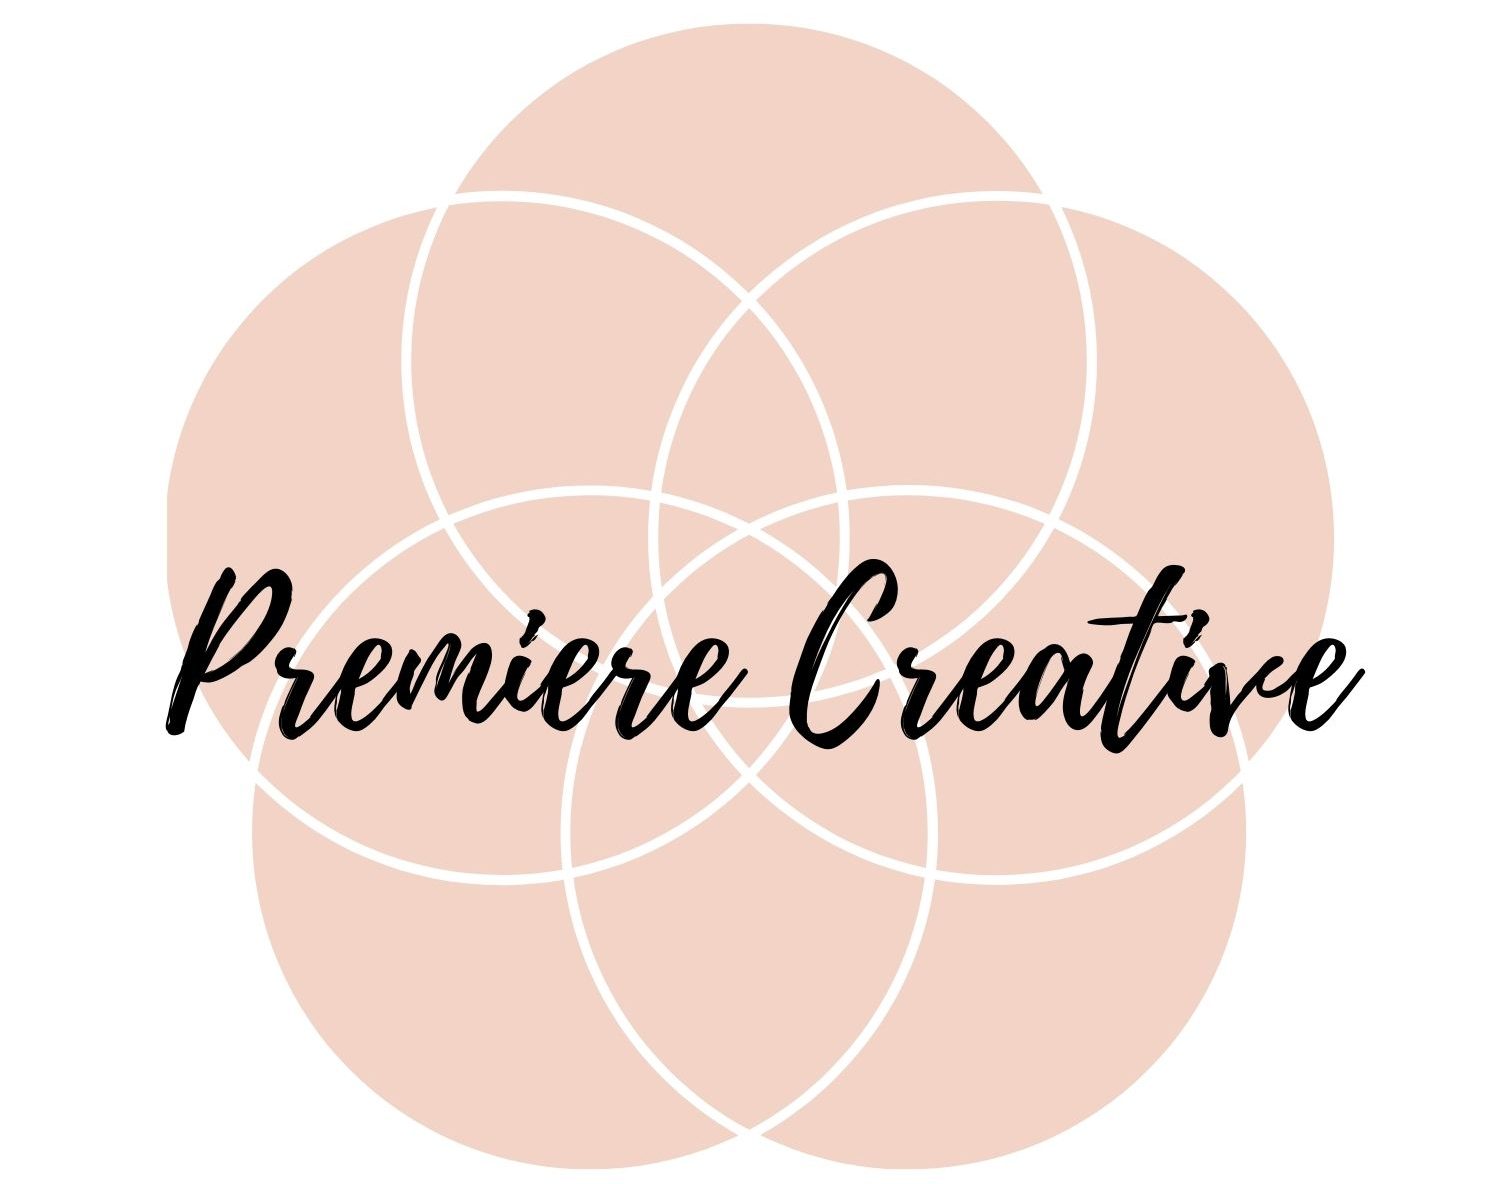 Premiere Creative